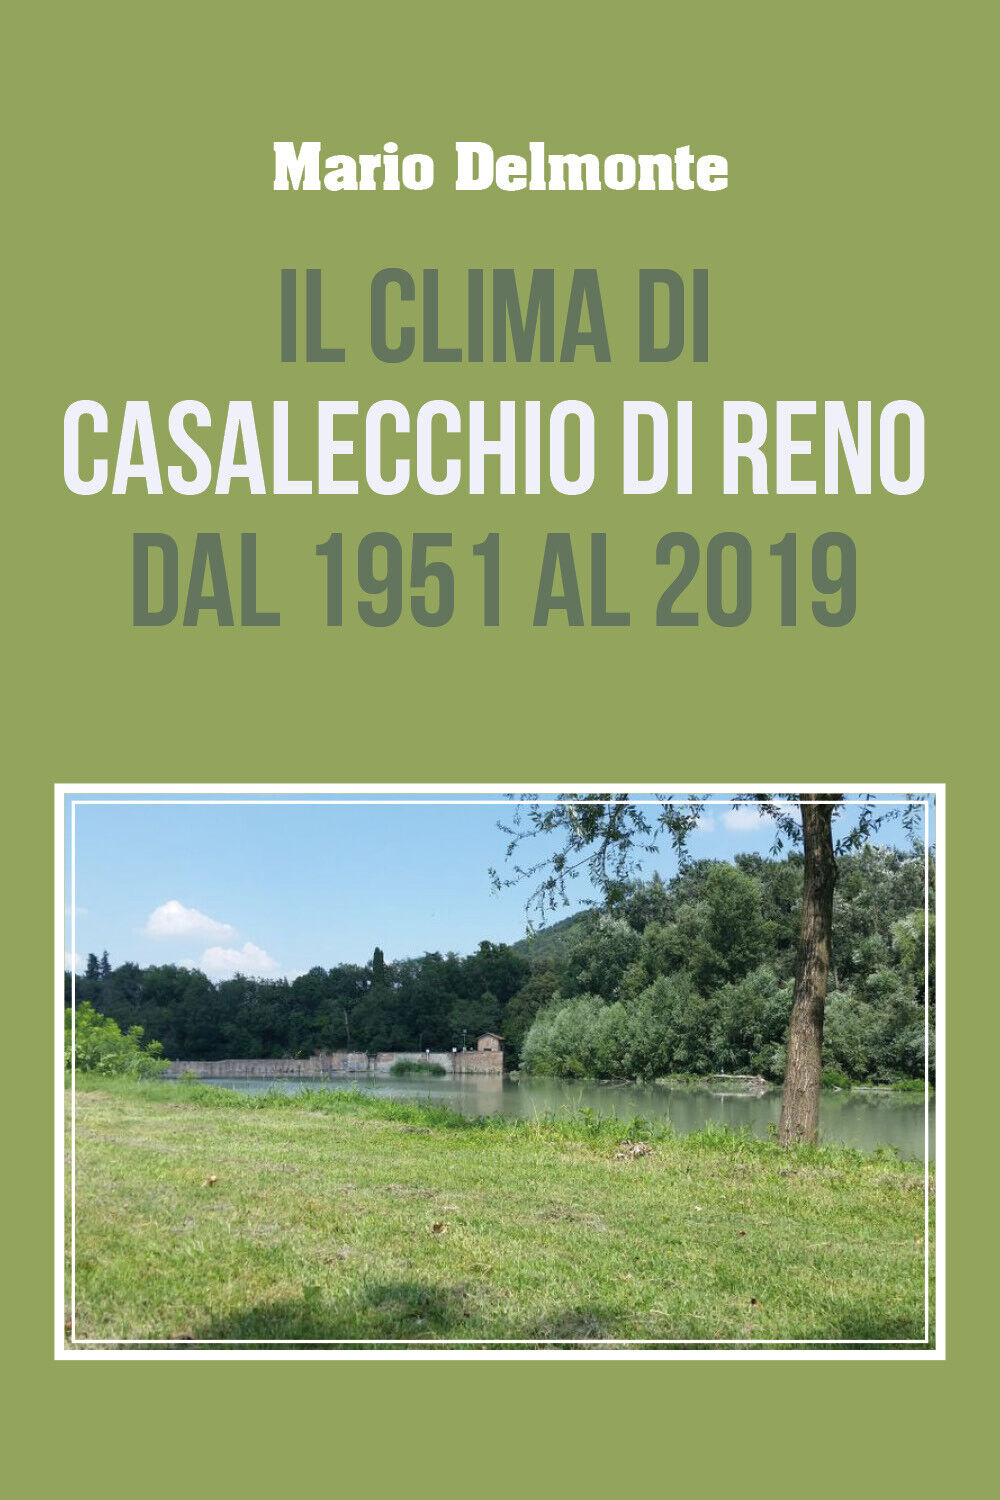 Il clima di Casalecchio di Reno dal 1951 al 2019 di Mario Delmonte,  2020,  Youc